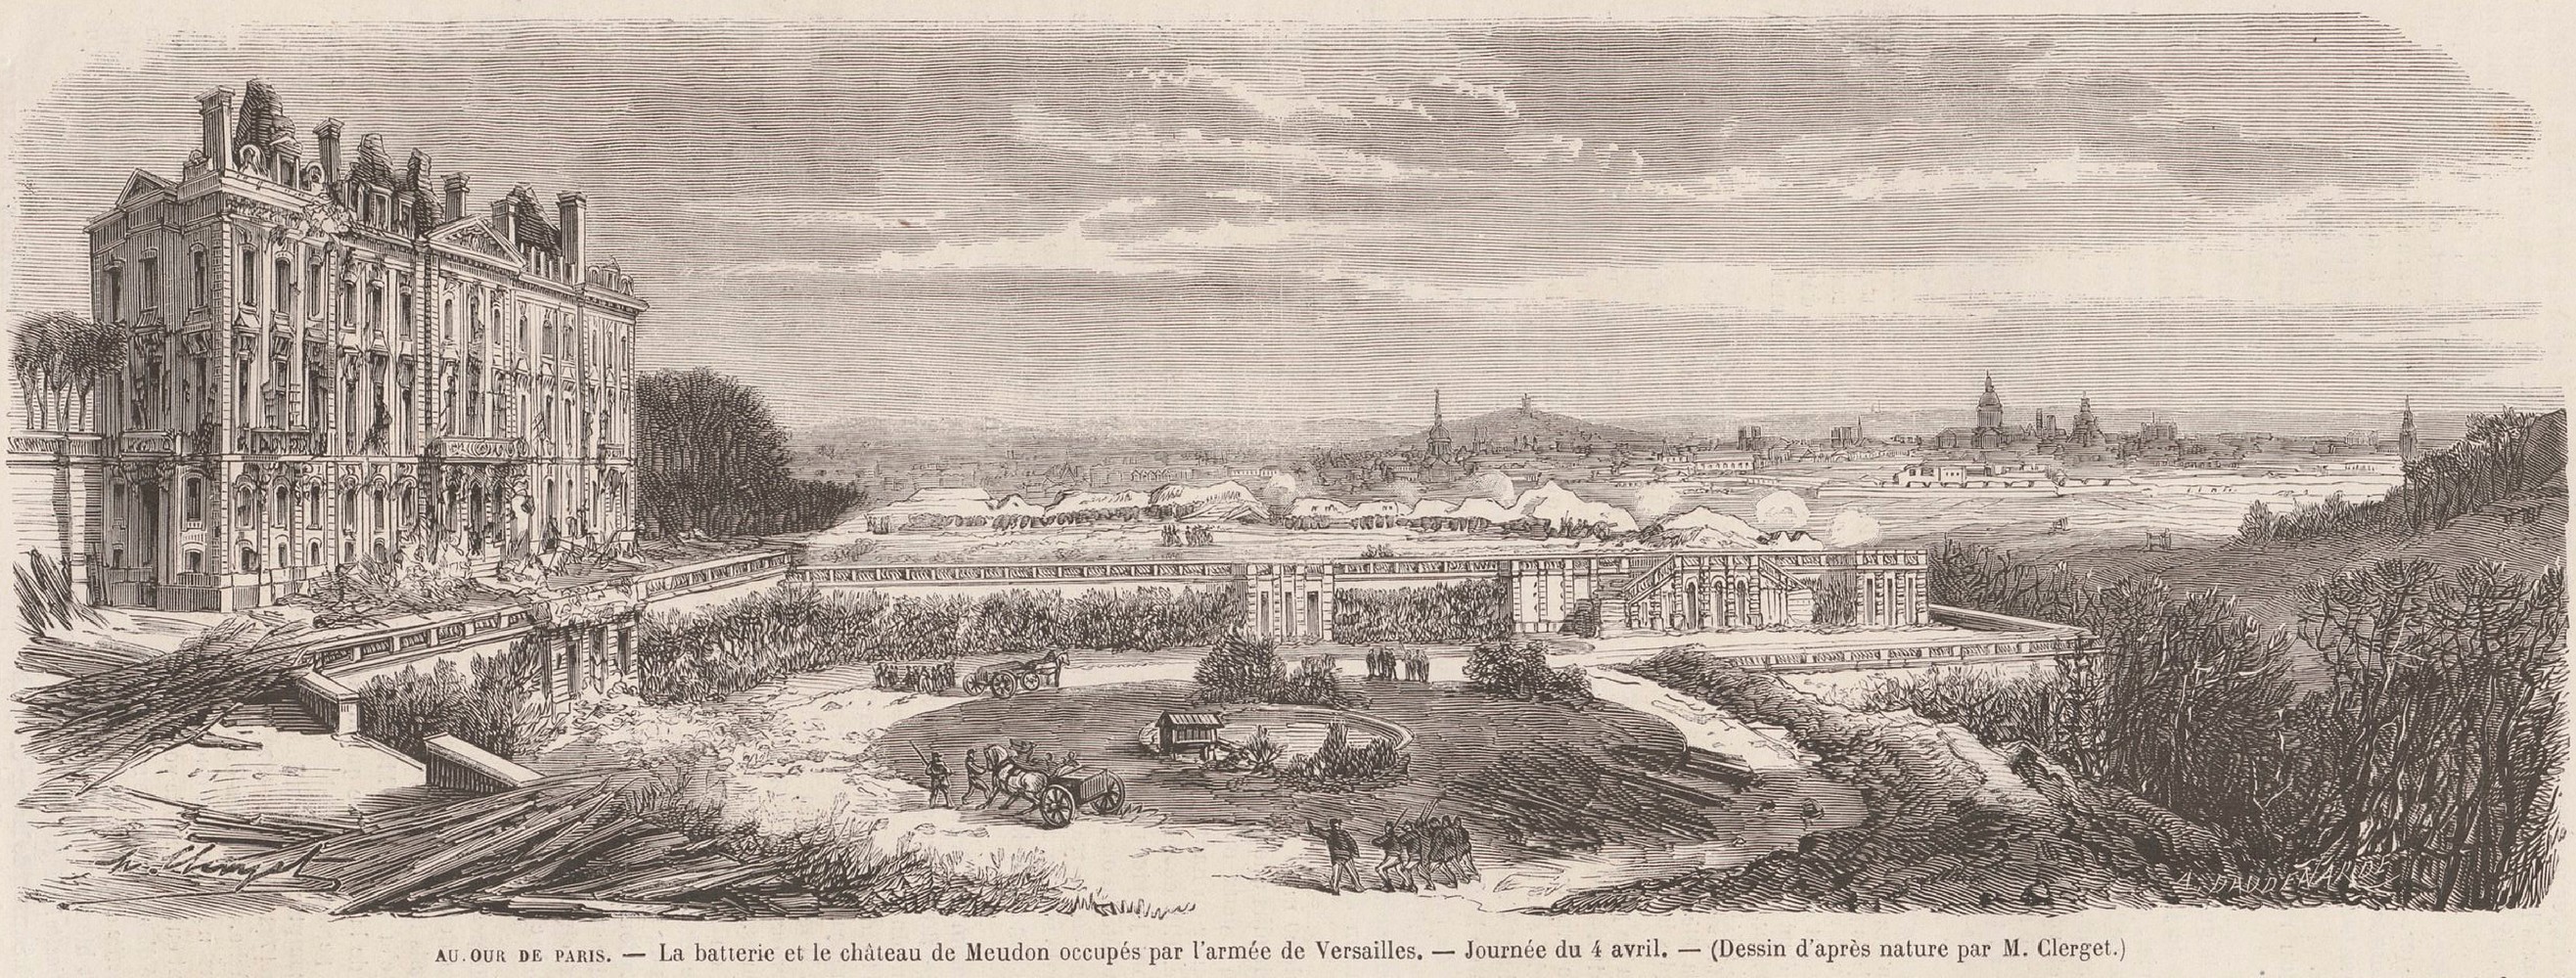 Autour de Paris, La batterie et le château de Meudon occupés par l'armée de Versailles. Journée du 4 avril. Dessin d'après nature "Le monde illustré du 15 Avril 1871"